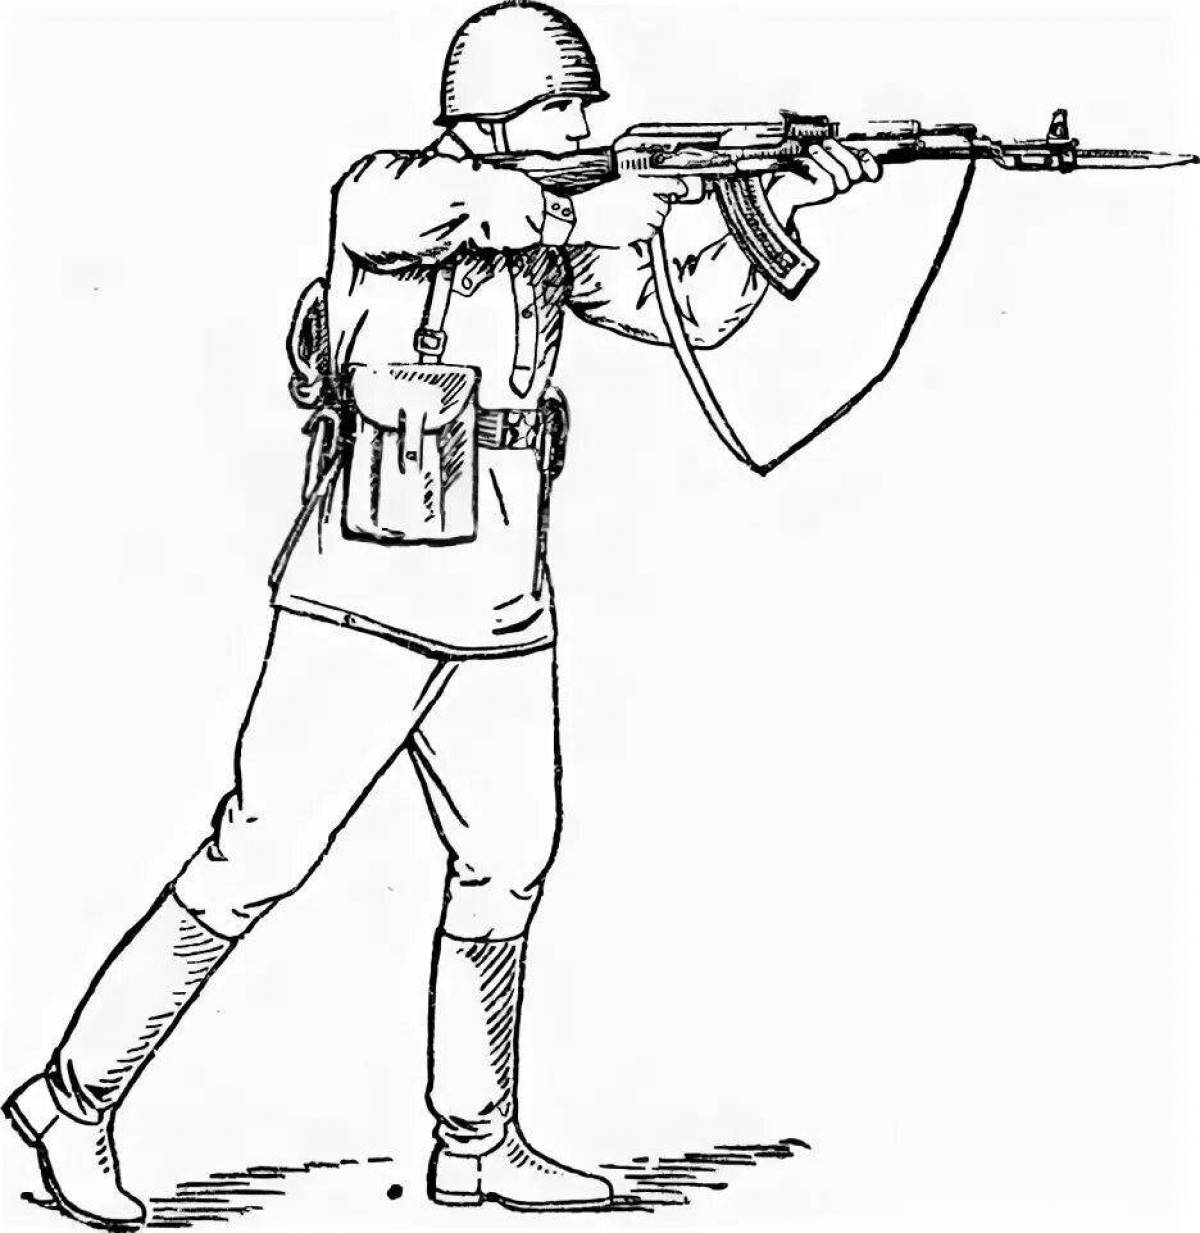 Soldier with machine gun #3